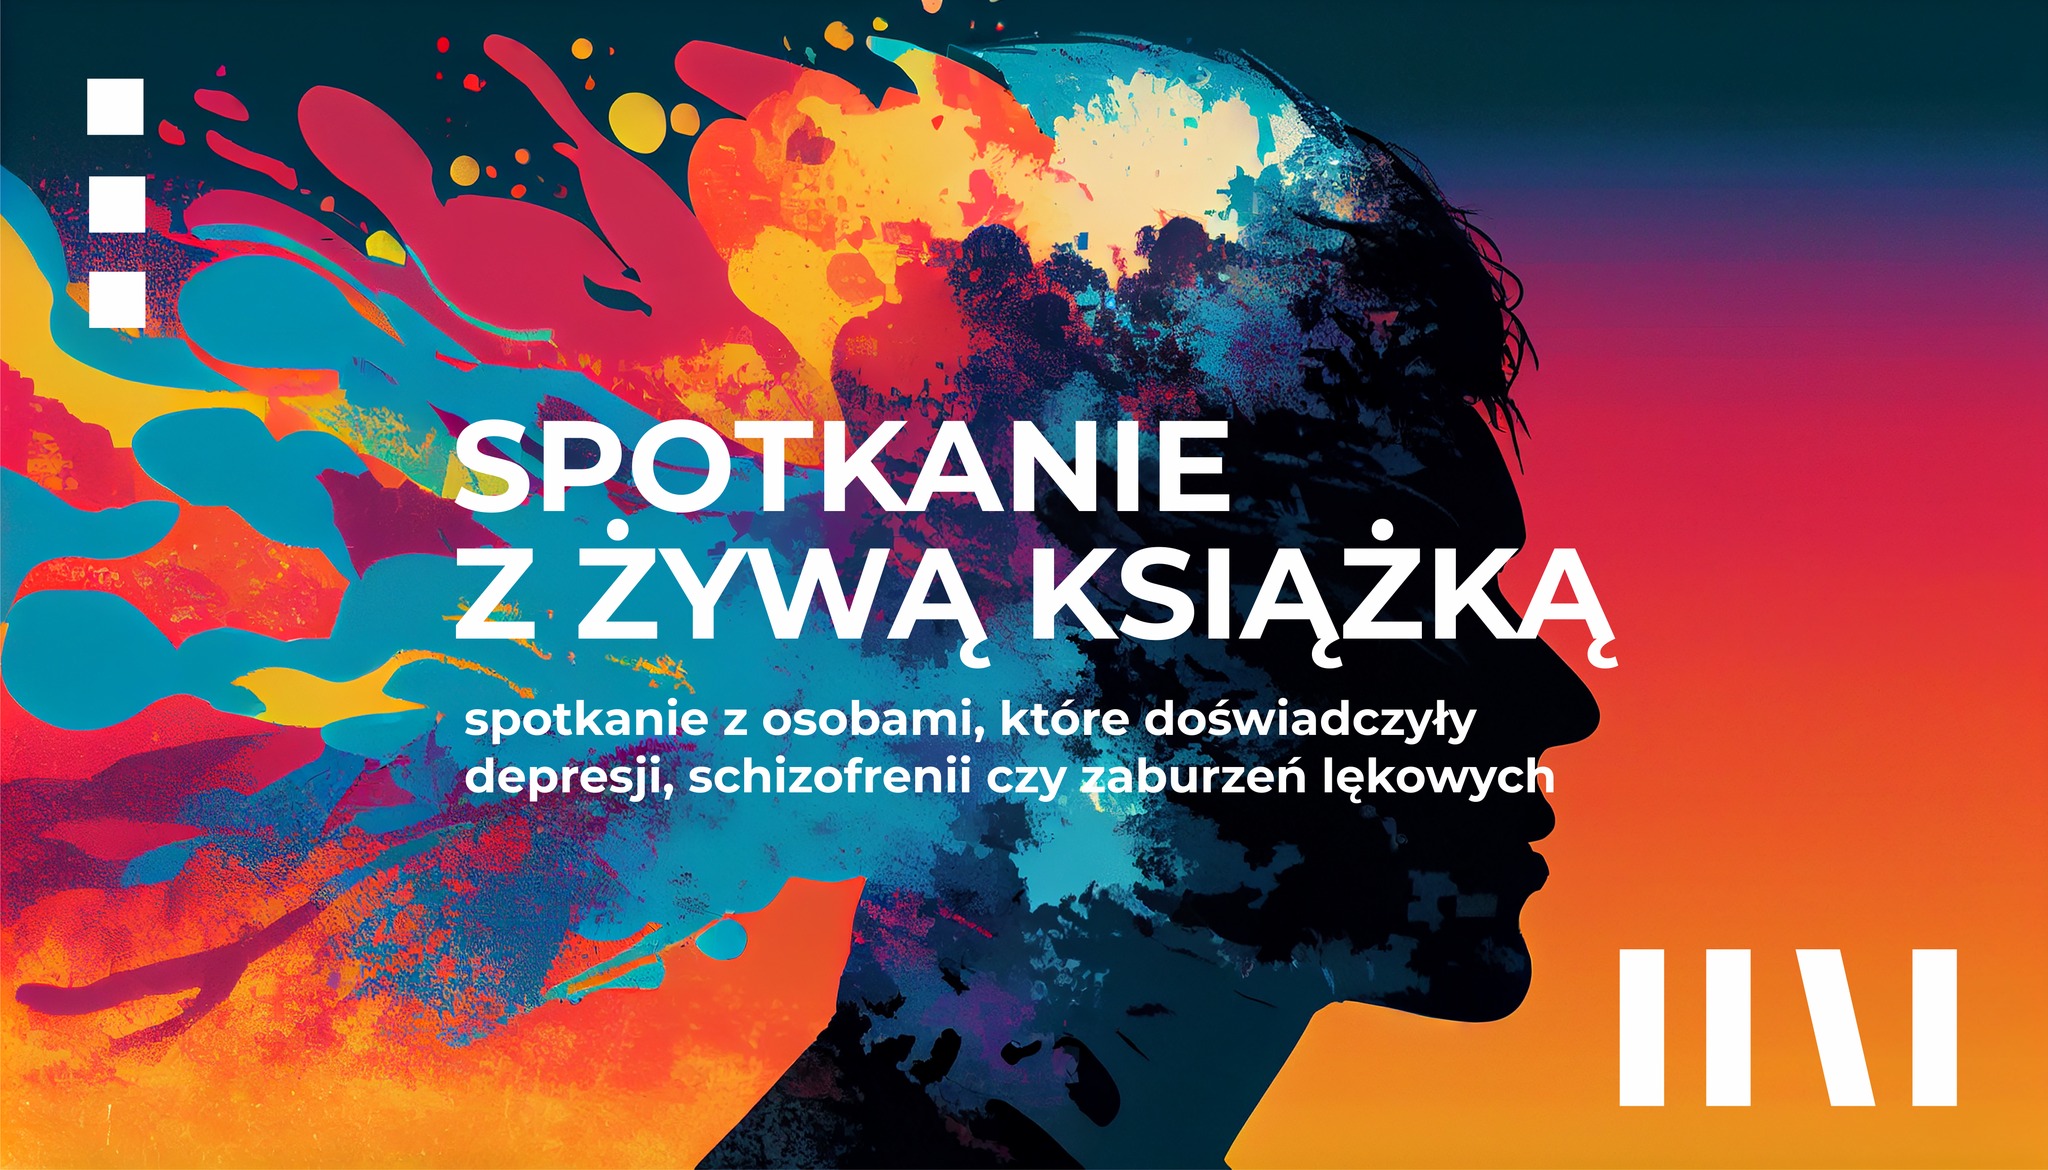 You are currently viewing Spotkanie z Żywą Książką – zaproszenie